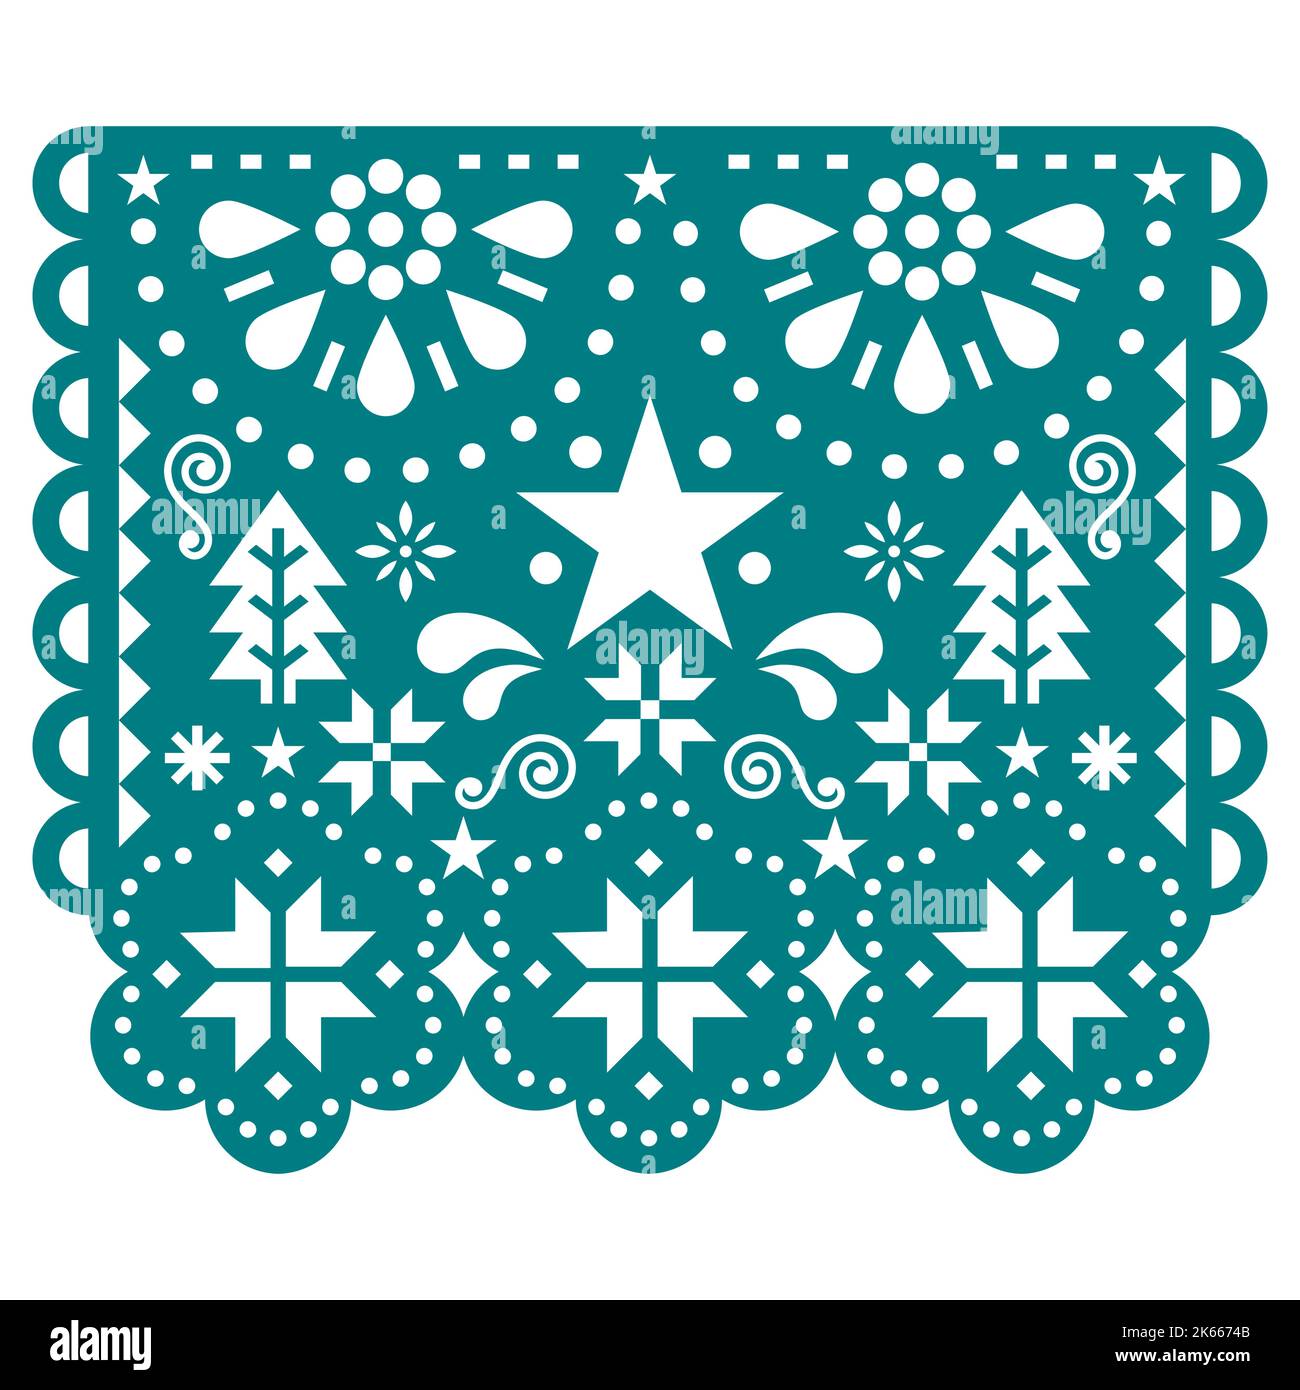 Weihnachtspapel Picado Vektor-Design mit Schneeflocken, Weihnachtsbäumen und Sternen, mexikanische Winterpapier Party Girlande Dekoration in grün Stock Vektor